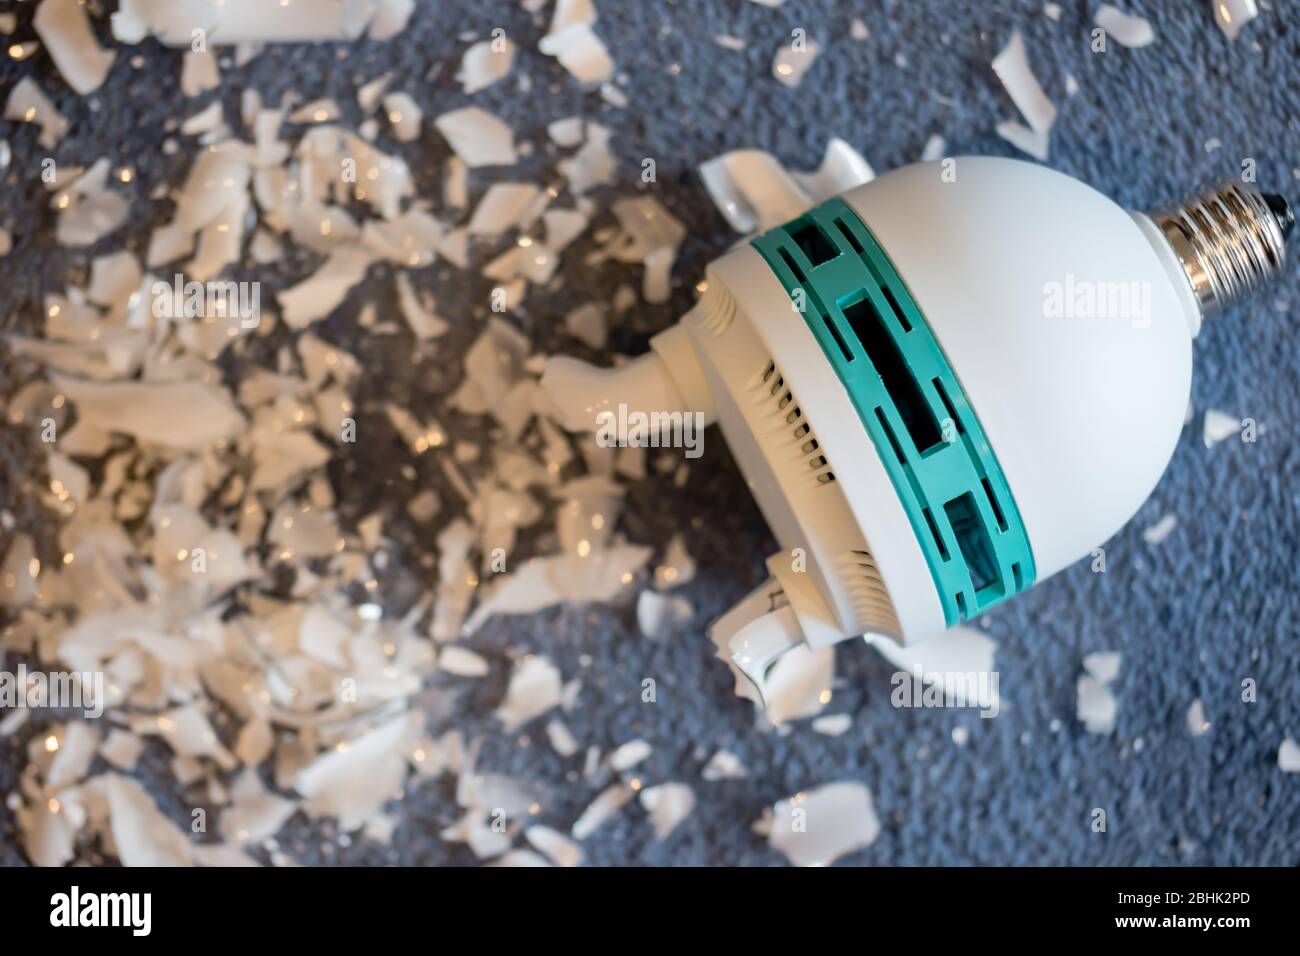 Una lampada da studio del fotografo rotta - lampada fluorescente compatta o lampadina CFL - che ha rilasciato vapore di mercurio Foto Stock